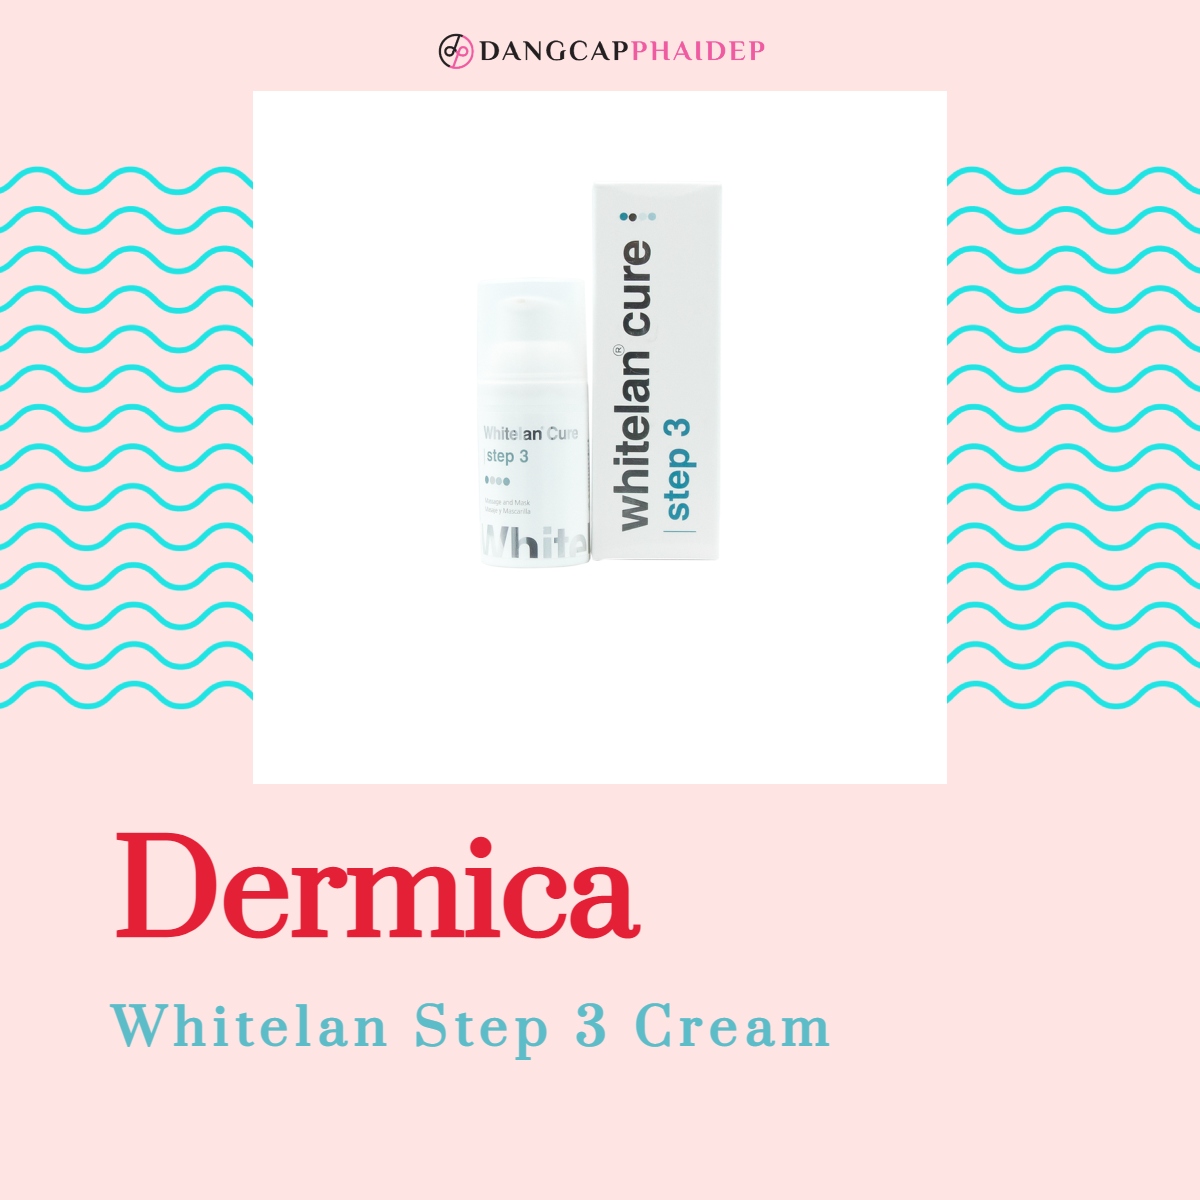 Dermica Whitelan Step 3 Cream chứa các dưỡng chất có hoạt tính mạnh mẽ.